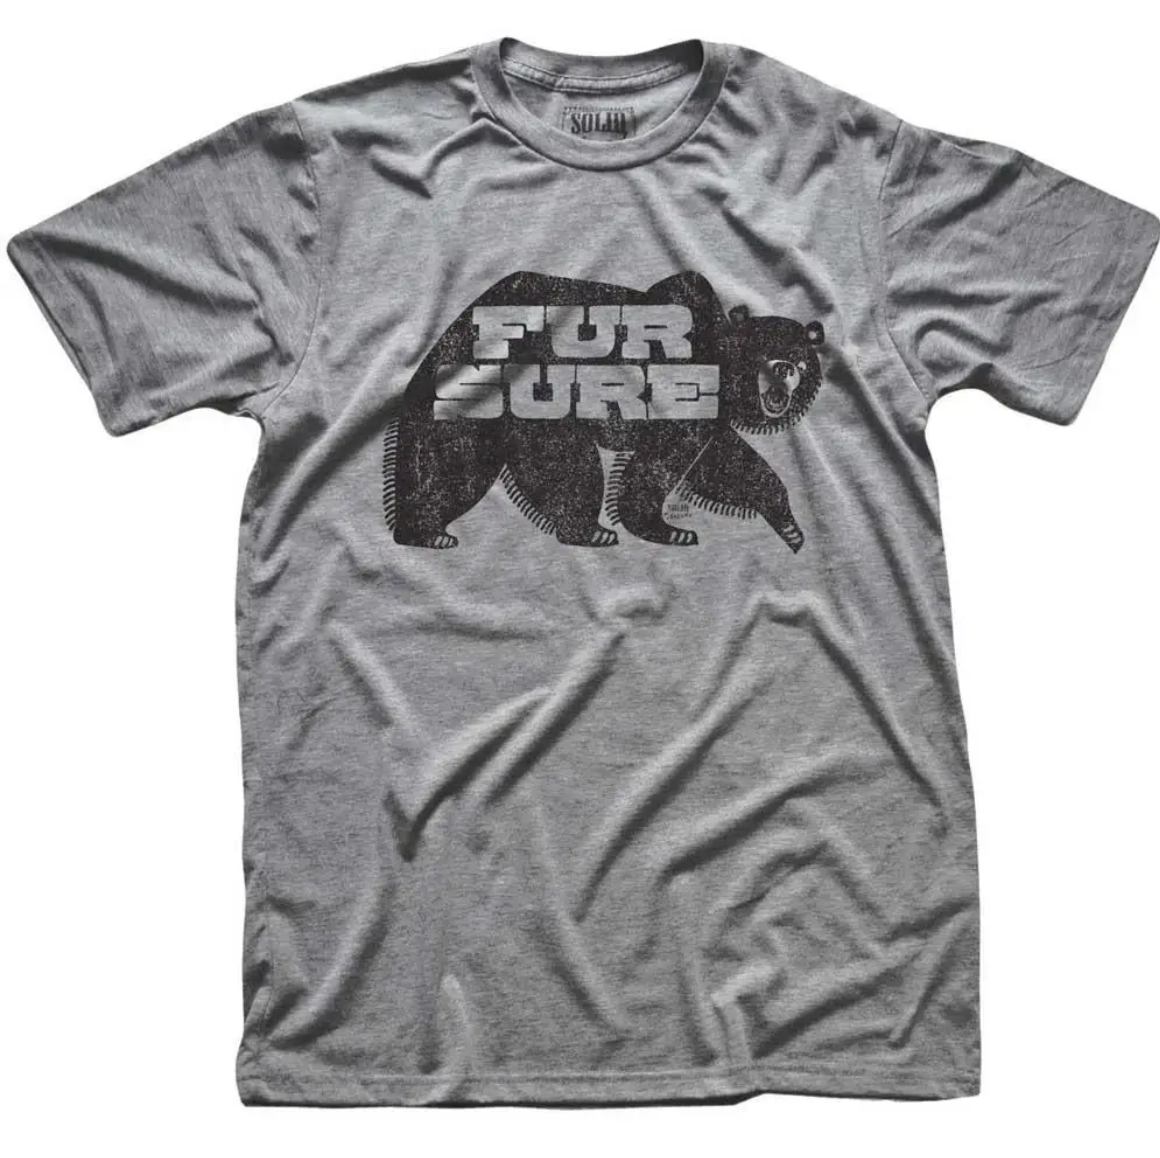 Fur Sure Men's Cotton T-Shirt